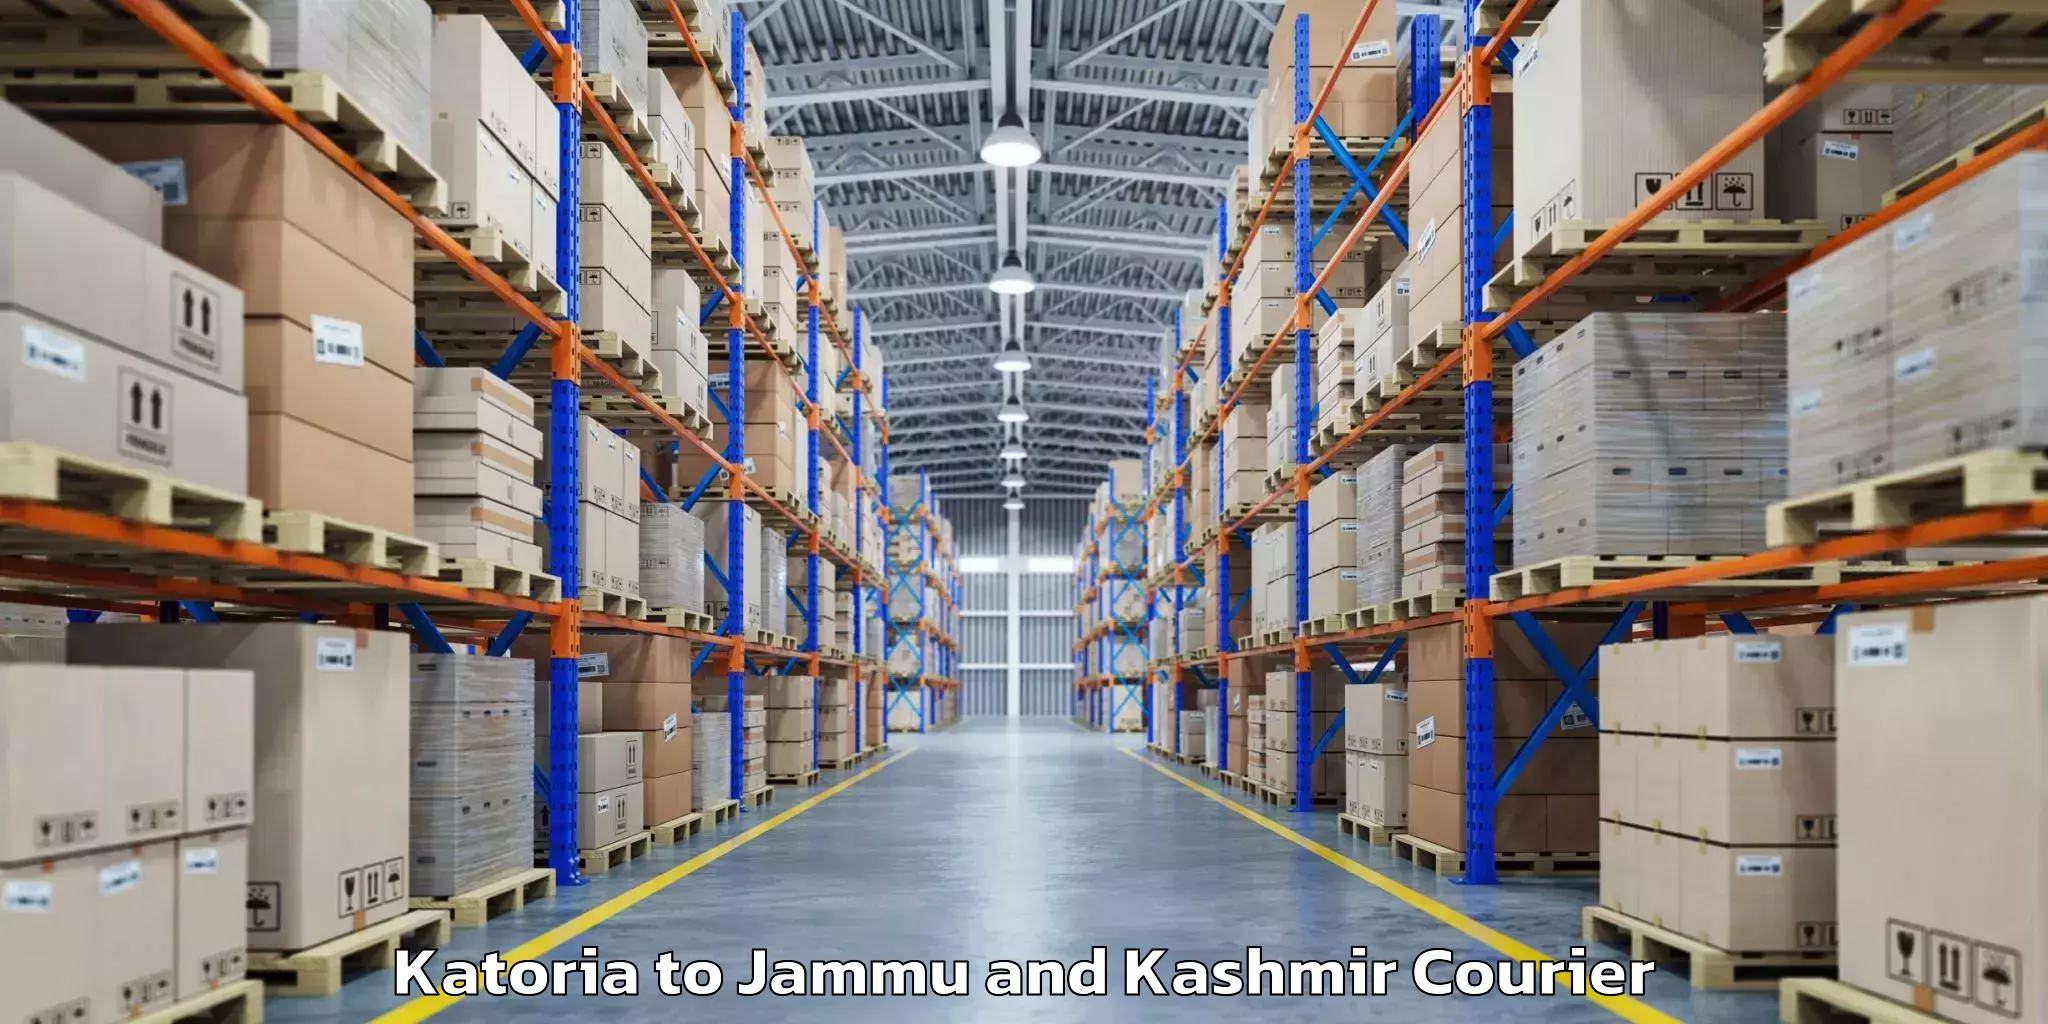 Baggage transport scheduler Katoria to Jammu and Kashmir